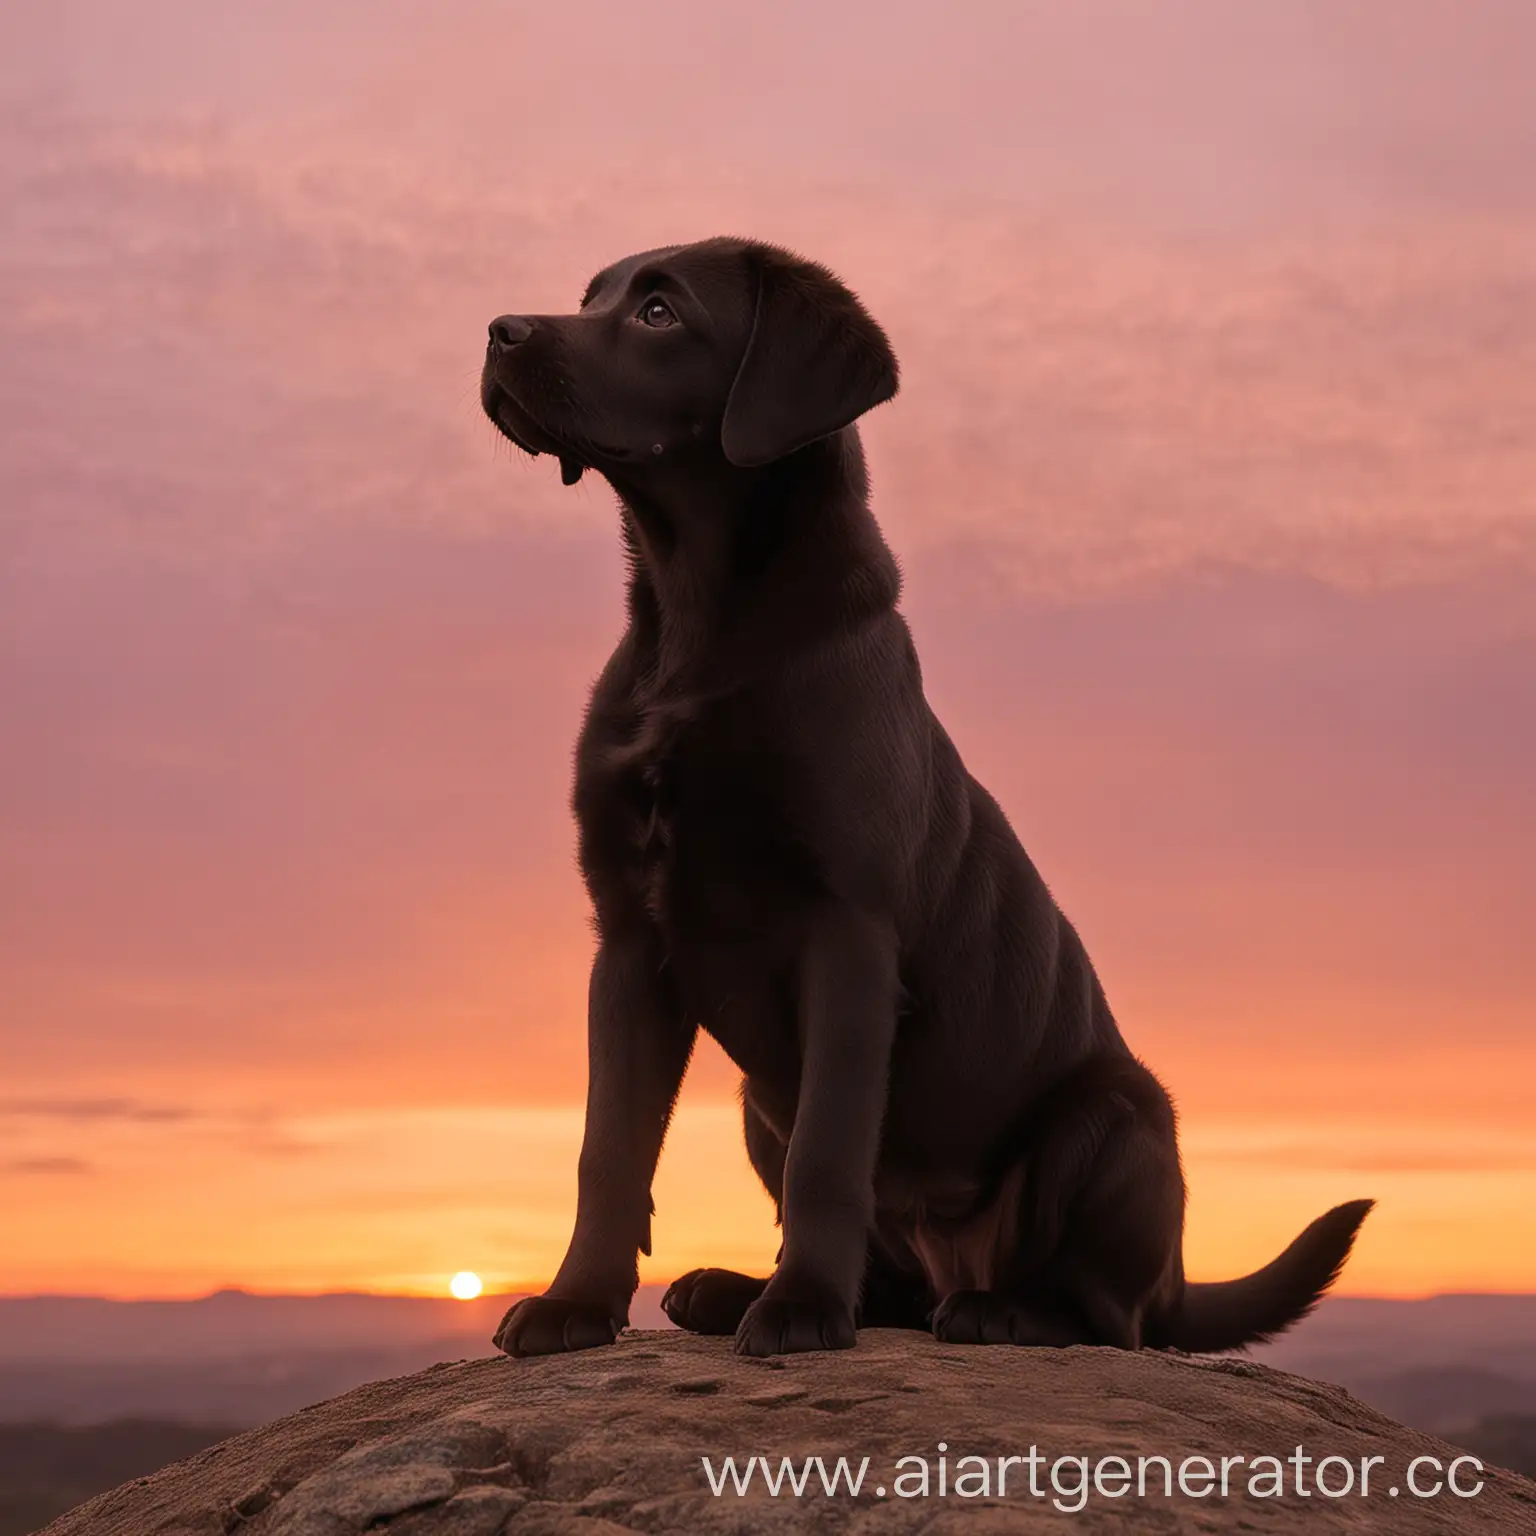 Представьте фотографию, на которой щенок лабрадора смотрит на восход солнца. Он сидит на вершине холма, его силуэт вырисовывается на фоне розово-оранжевого неба. Щенок смотрит вдаль с видом, полным надежды и ожидания. Его поза расслаблена, но в то же время в ней чувствуется готовность к новым приключениям.